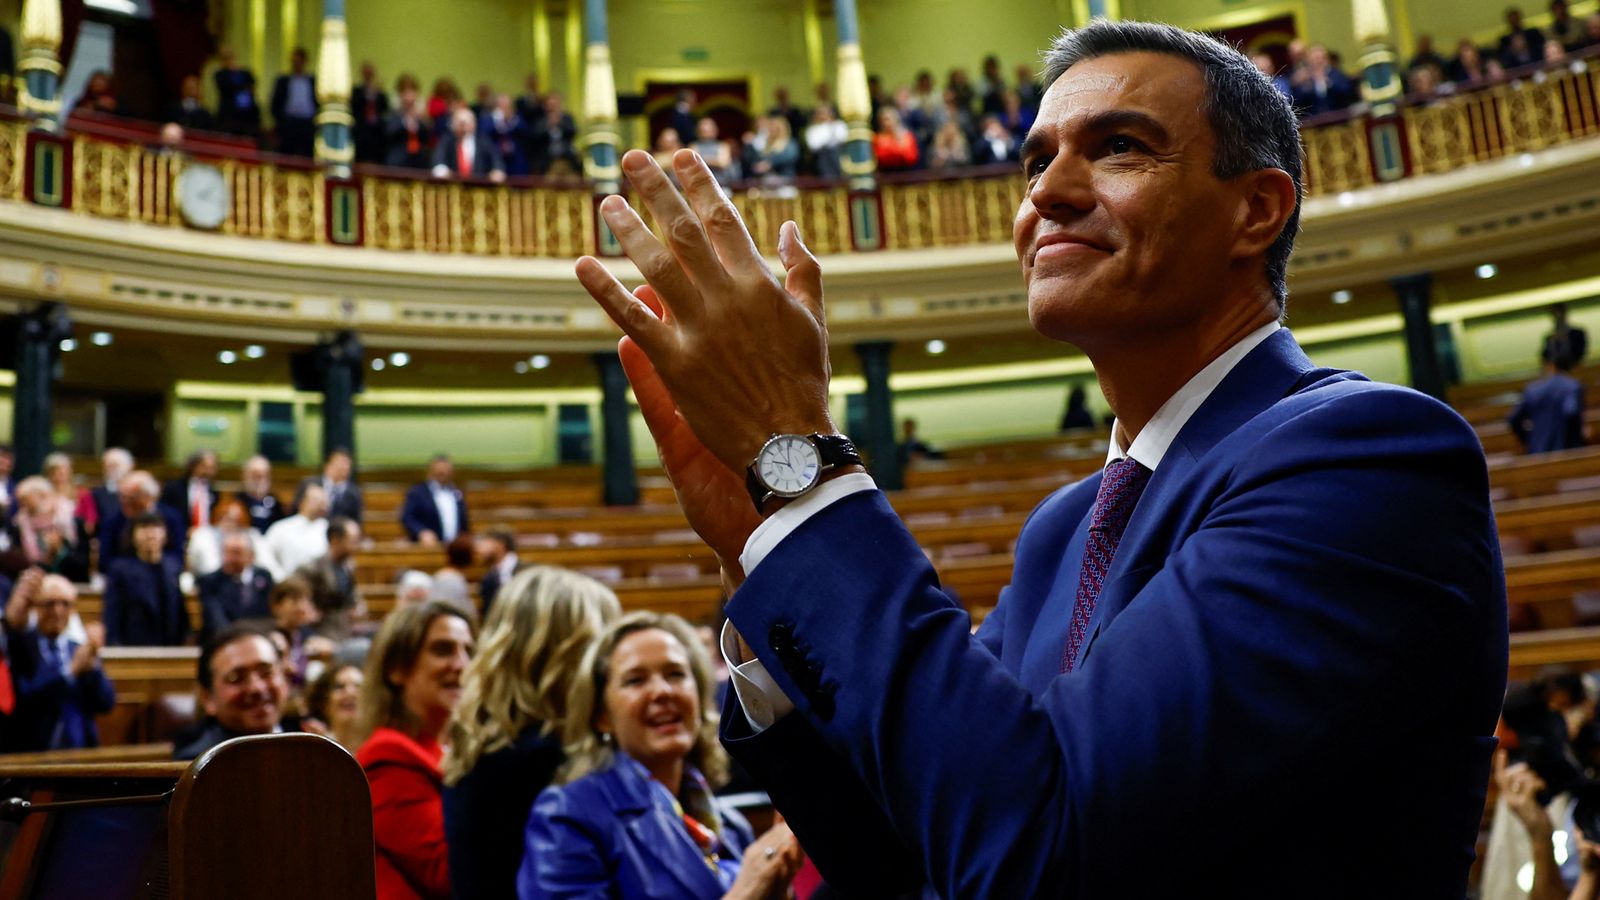 Pedro Sánchez reelegido presidente del Gobierno de España, tras la controversia sobre el acuerdo de amnistía |  Noticias del mundo